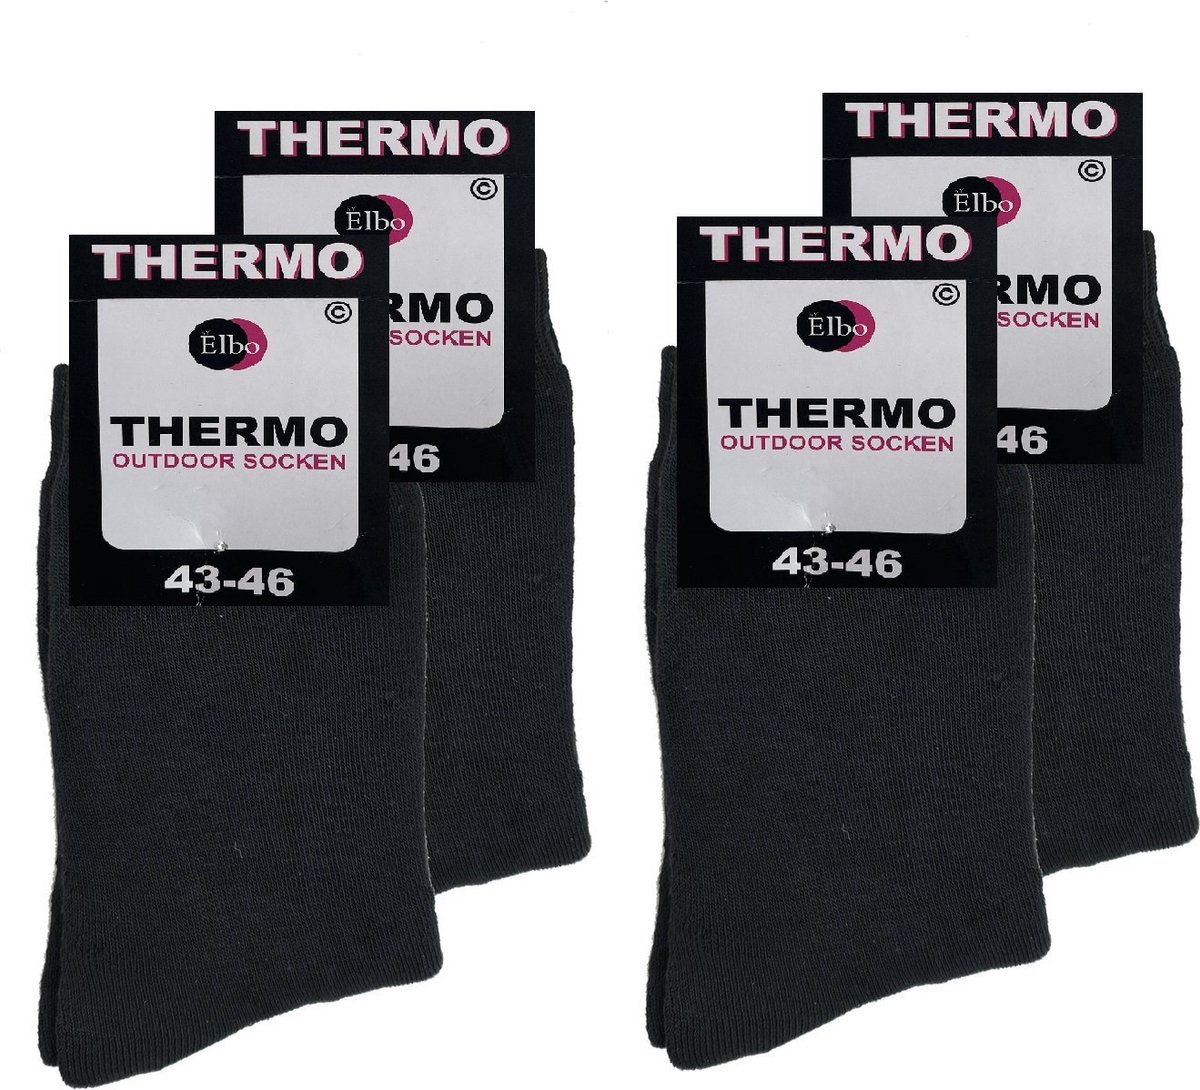 Thermo sokken ByElbo – 4pack – maat 43-46 – badstof voering – zwart - Sport Thermo Sok - Thermisch - Warm Sock - Wandelsokken - Schaatssokken - Winter Ski sokken -